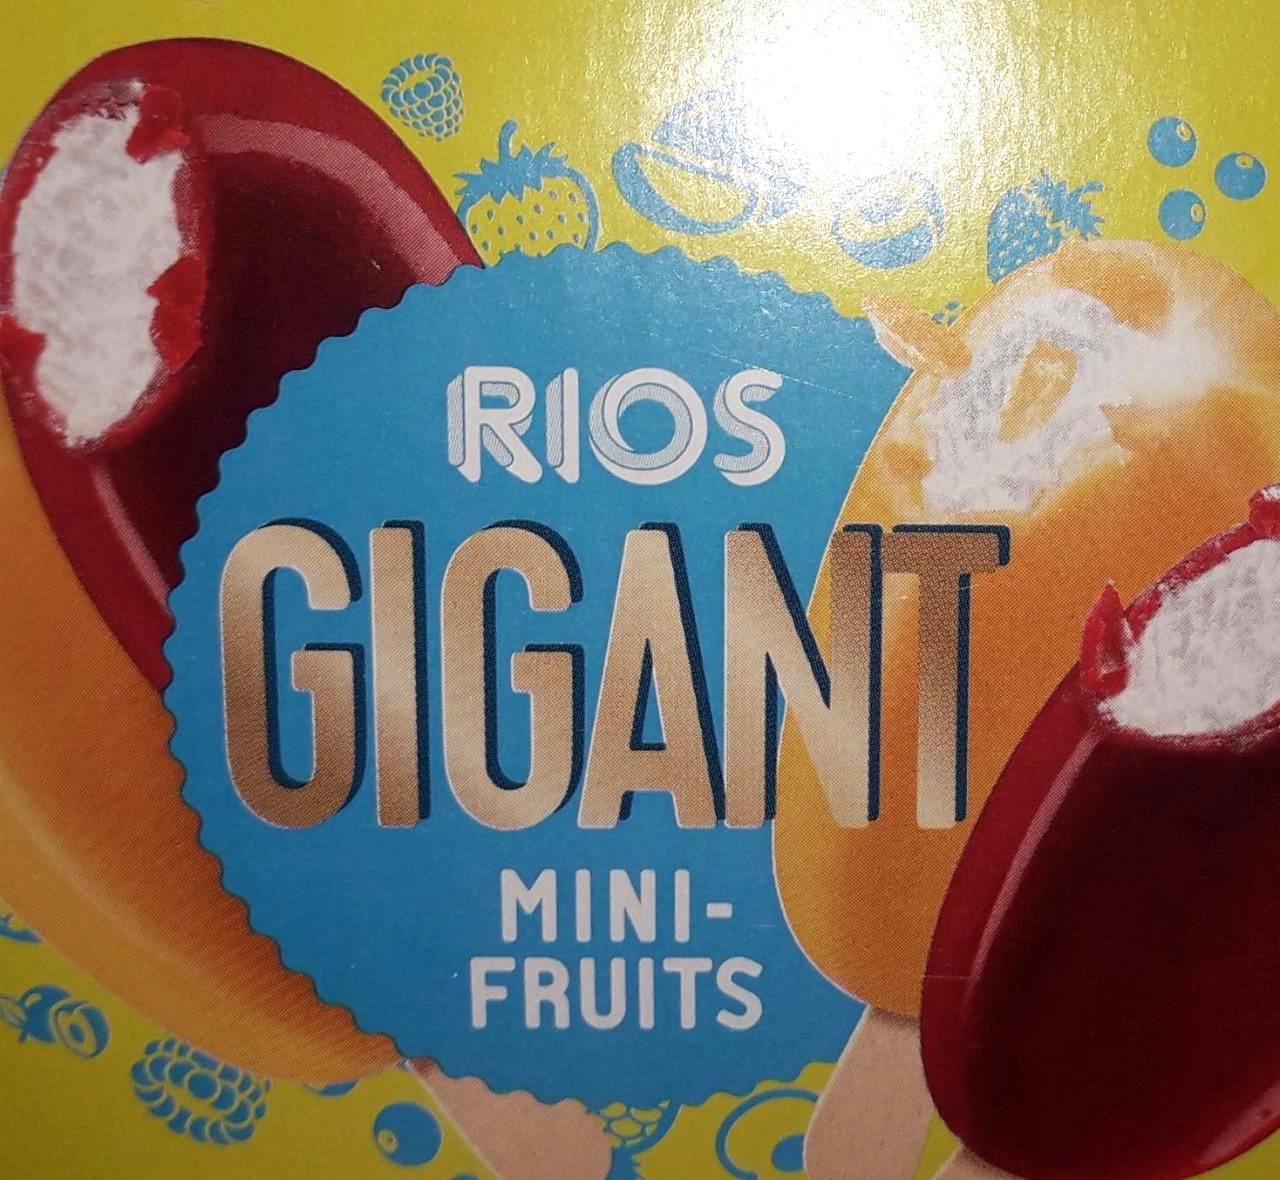 Képek - Gigant minifruits Rios